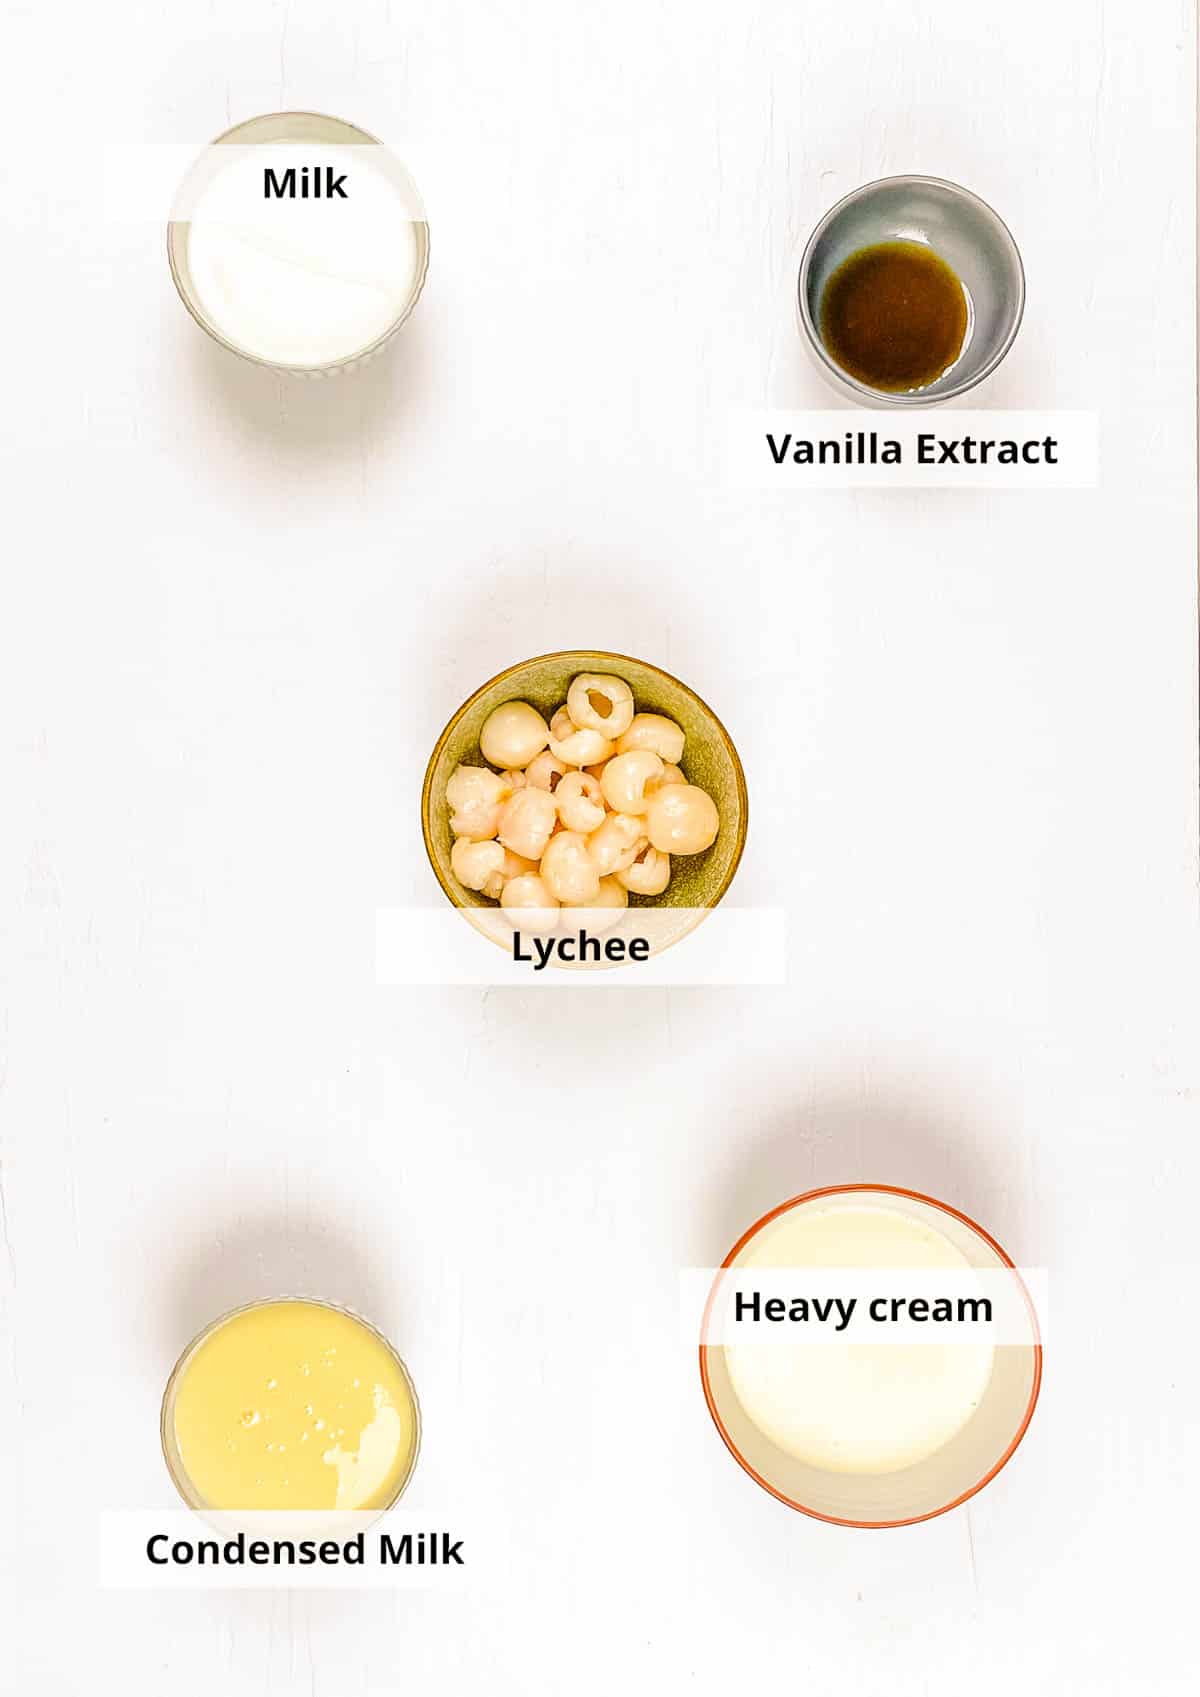 Ingrédients pour la recette de glace au litchi sur fond blanc.